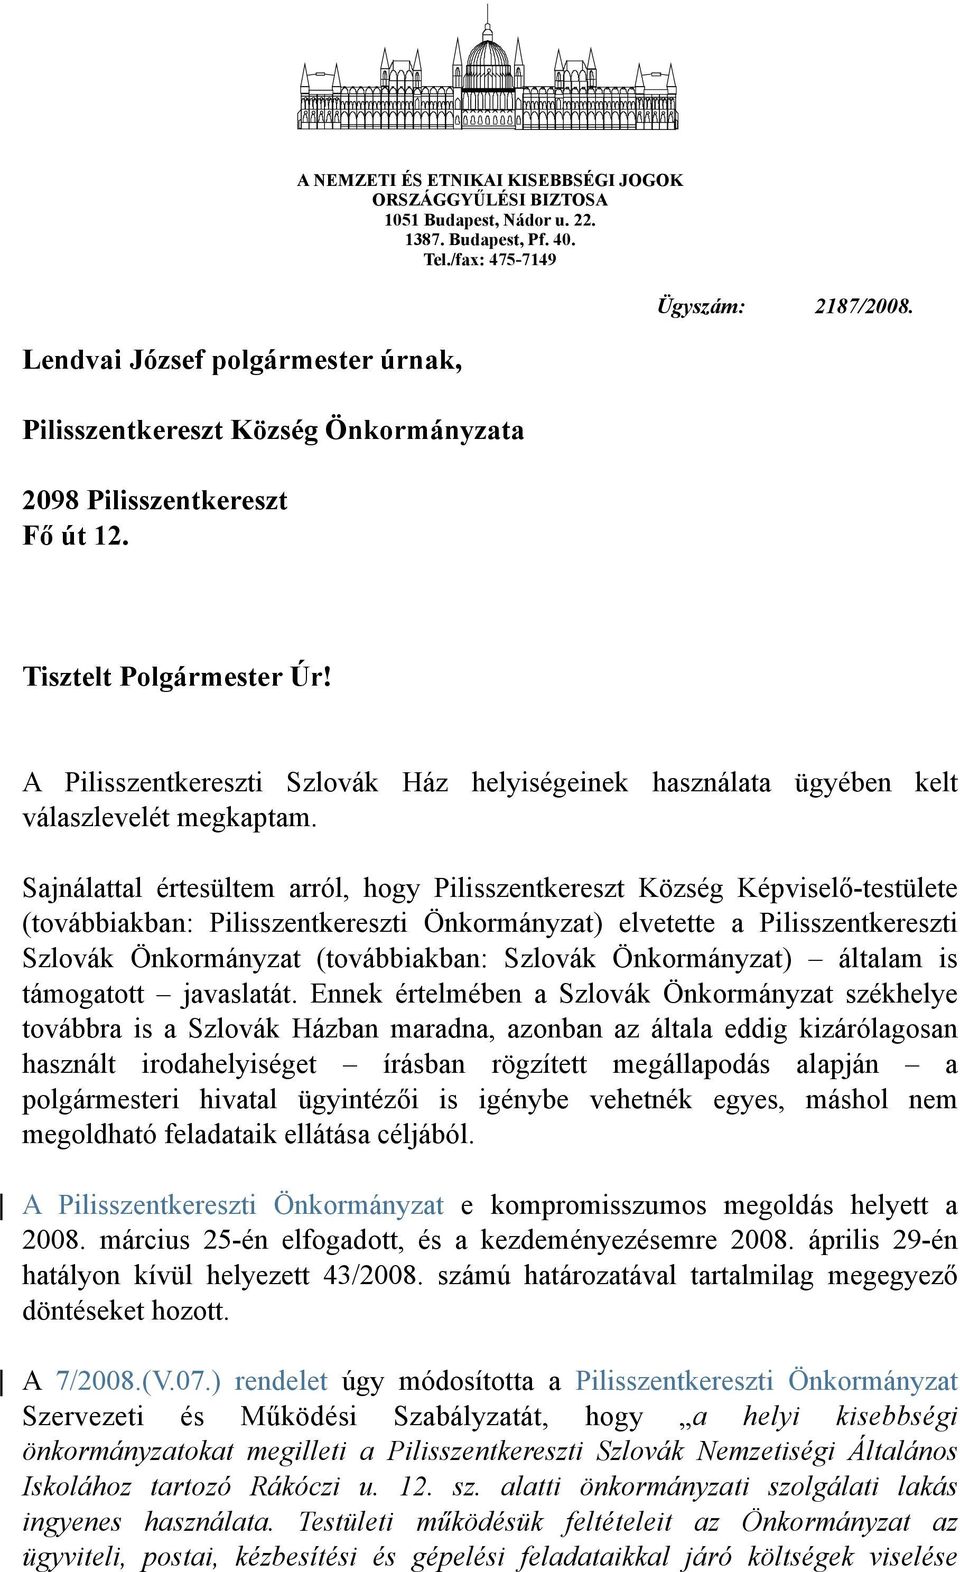 Sajnálattal értesültem arról, hogy Pilisszentkereszt Község Képviselő-testülete (továbbiakban: Pilisszentkereszti Önkormányzat) elvetette a Pilisszentkereszti Szlovák Önkormányzat (továbbiakban: